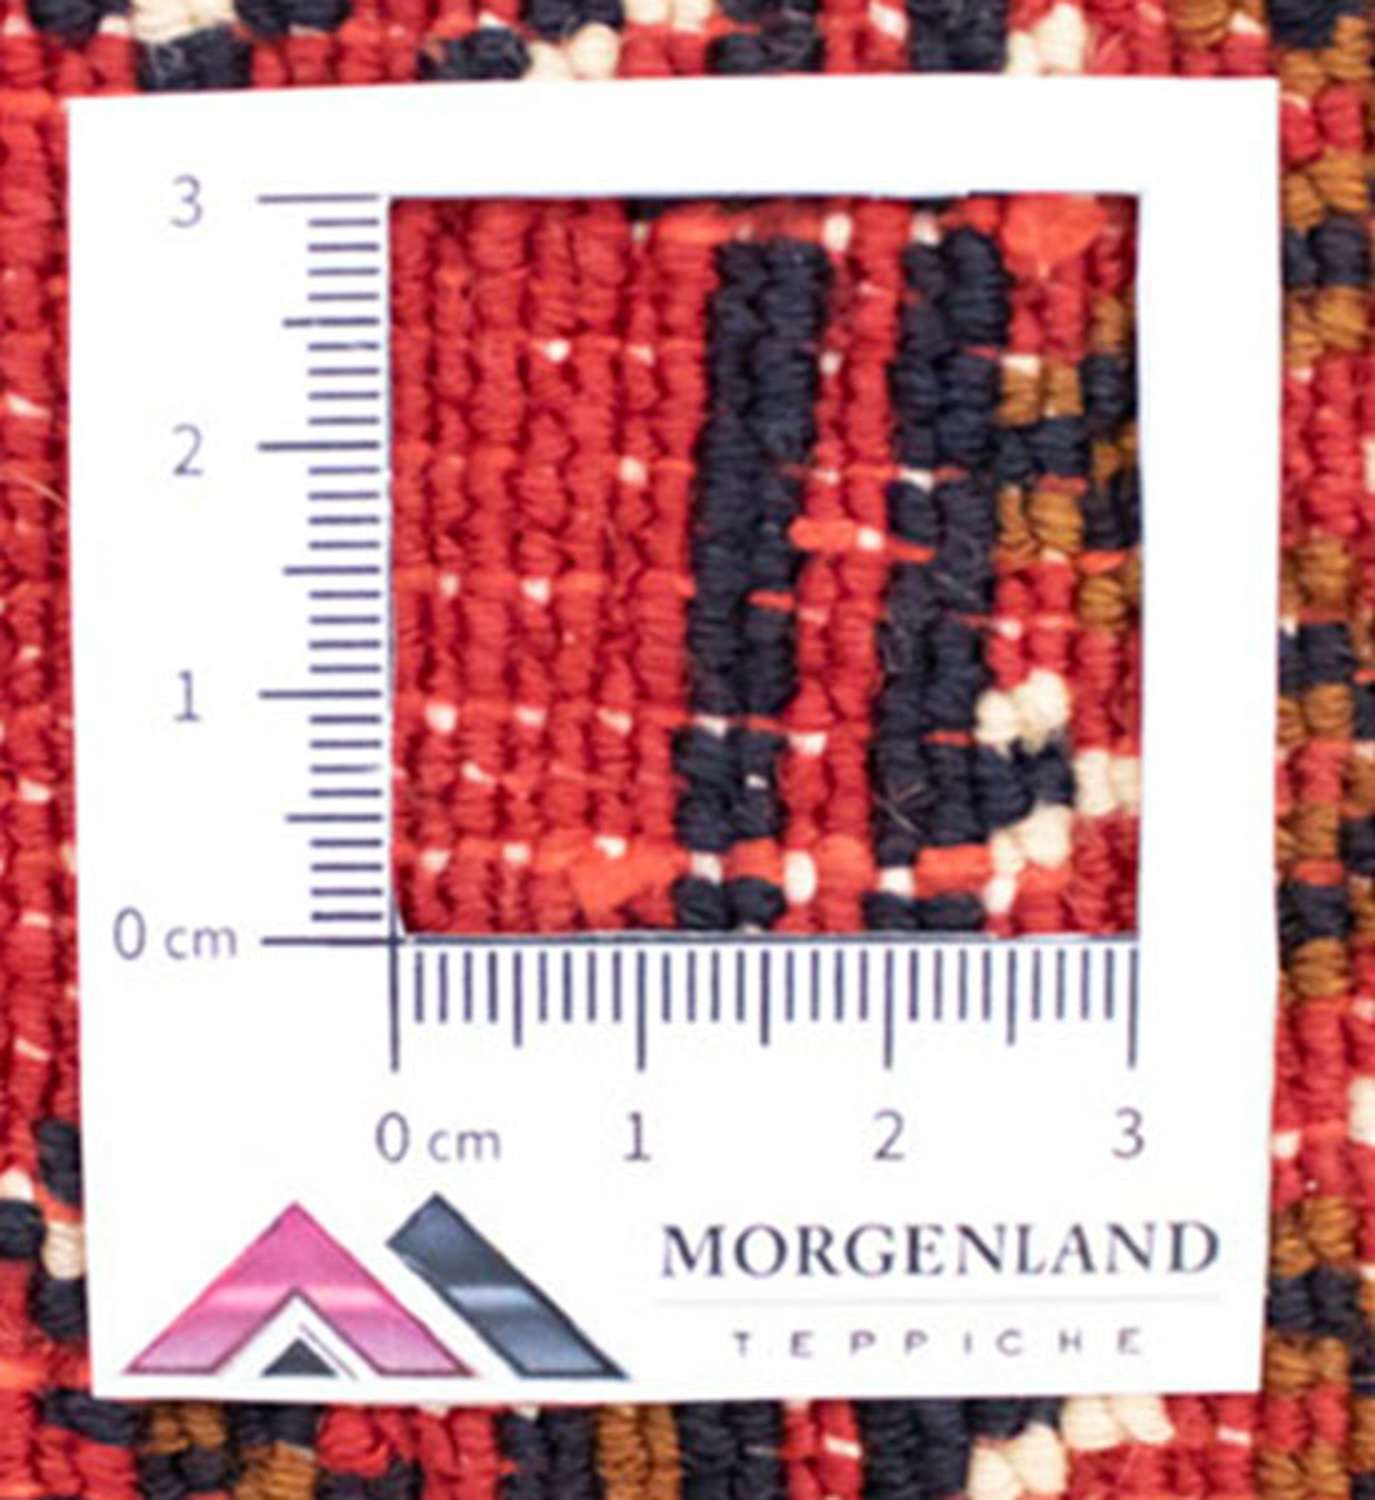 Turkaman-tæppe - 130 x 60 cm - rød